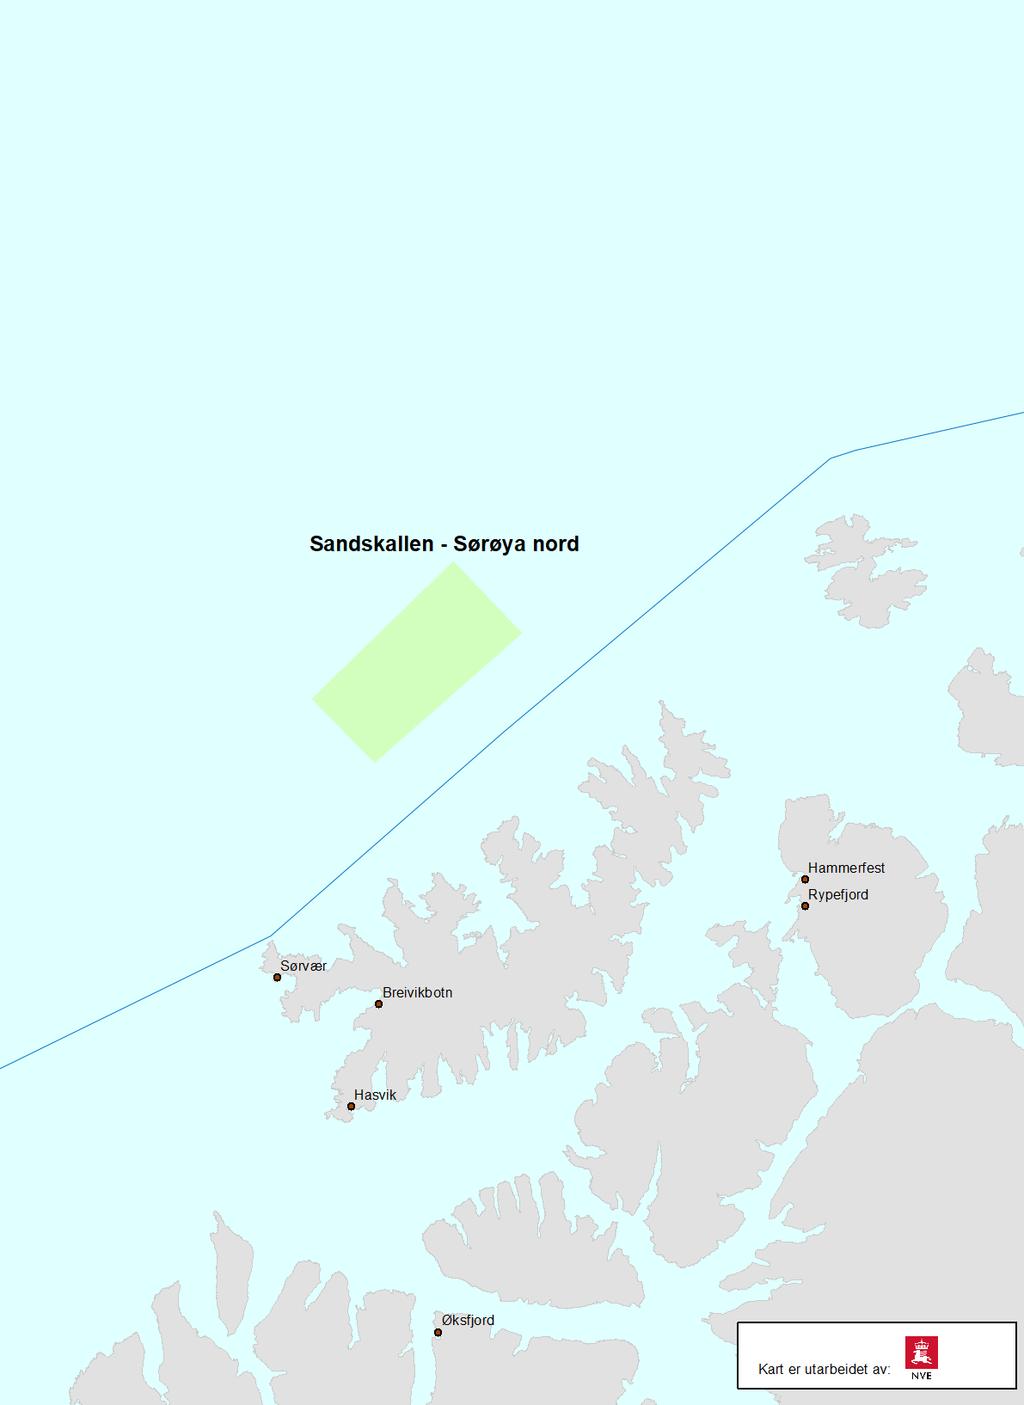 Sandskallen- Sørøya Nord Av høringsnotatet fremgår det at Sandskallen-Sørøya Nord er foreslått avsatt til vindkraftutbygging innenfor følgende definerte punkt: 22 0 12 01 E, 70 0 55 10 N 22 0 42 35